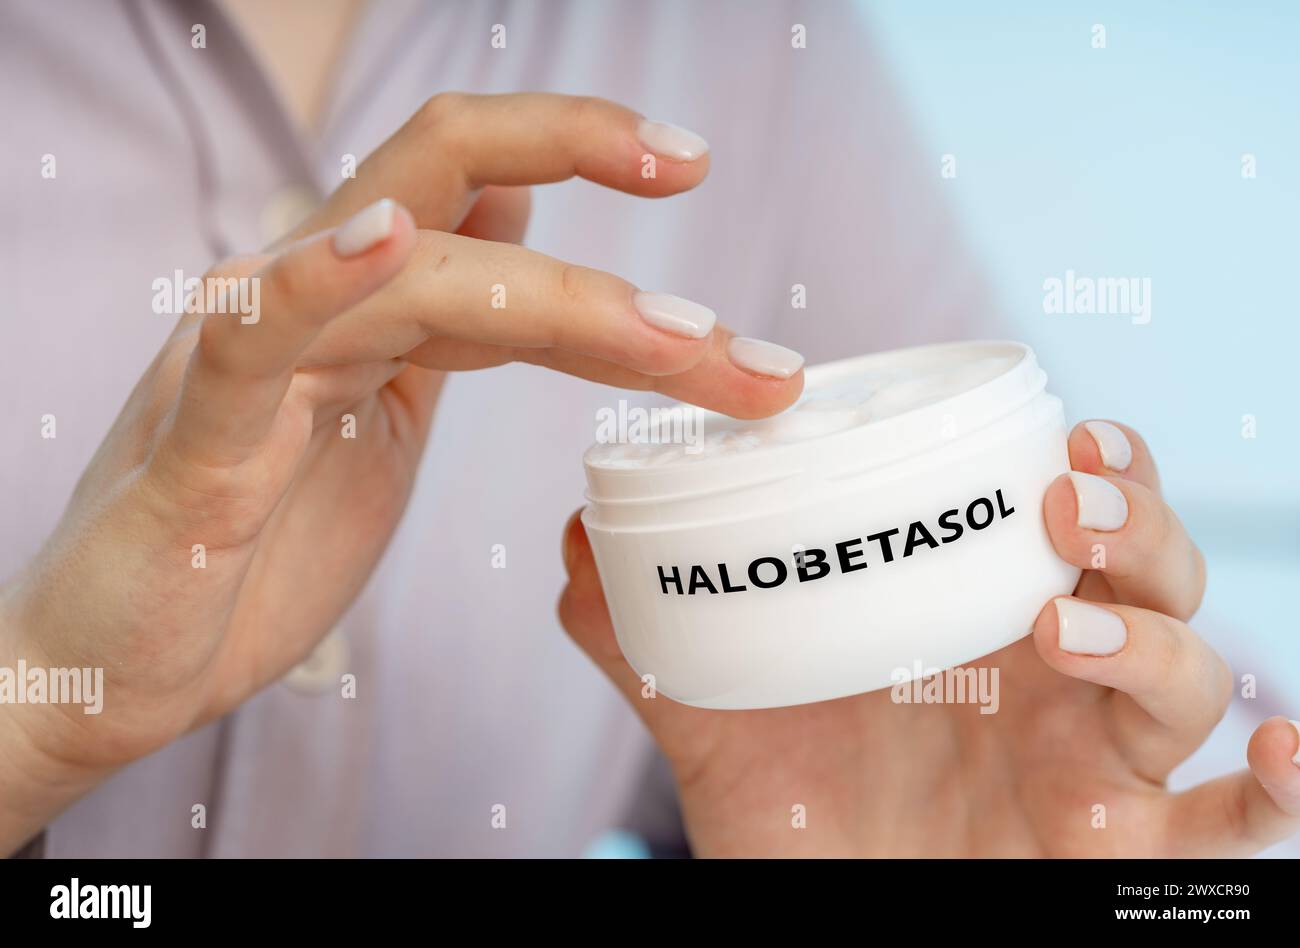 Halobetasol-medizinische Creme, konzeptuelles Bild. Eine potente Kortikosteroid-Creme, die zur Linderung von Entzündungen, Juckreiz und Rötung bei verschiedenen Hautkrankheiten eingesetzt wird. Stockfoto